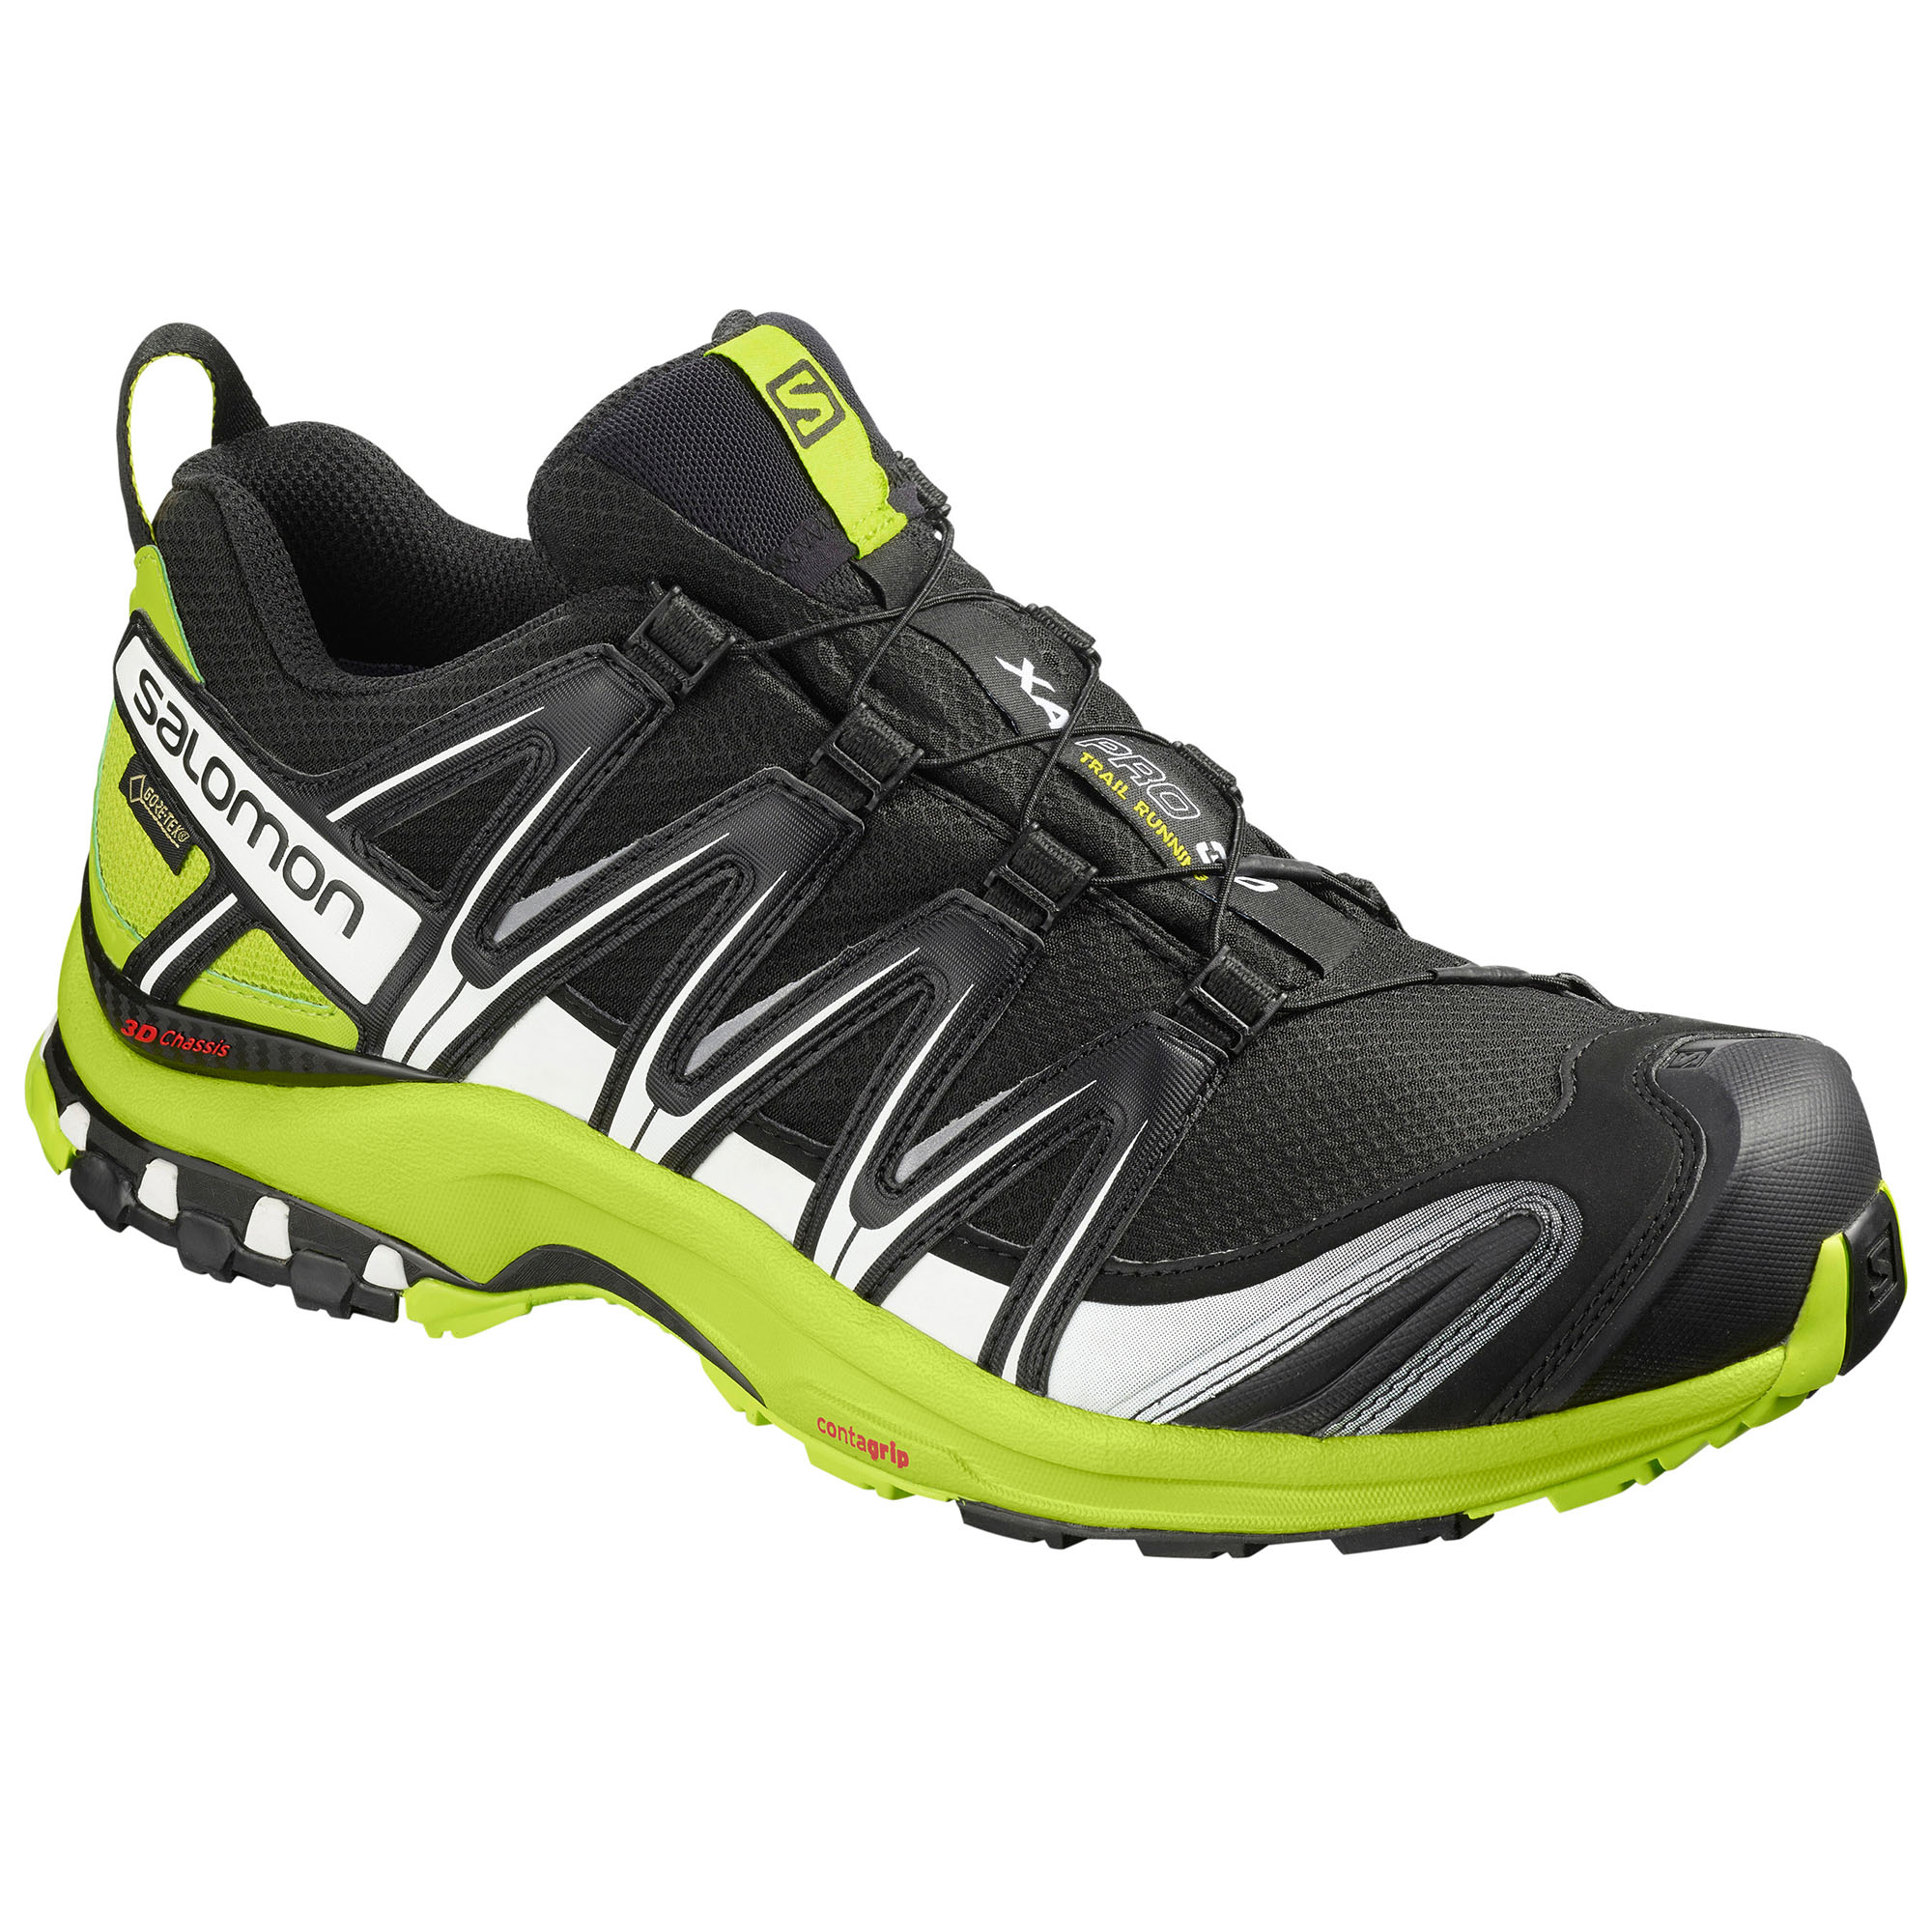 XA Pro 3D GTX Trail Running Shoes 